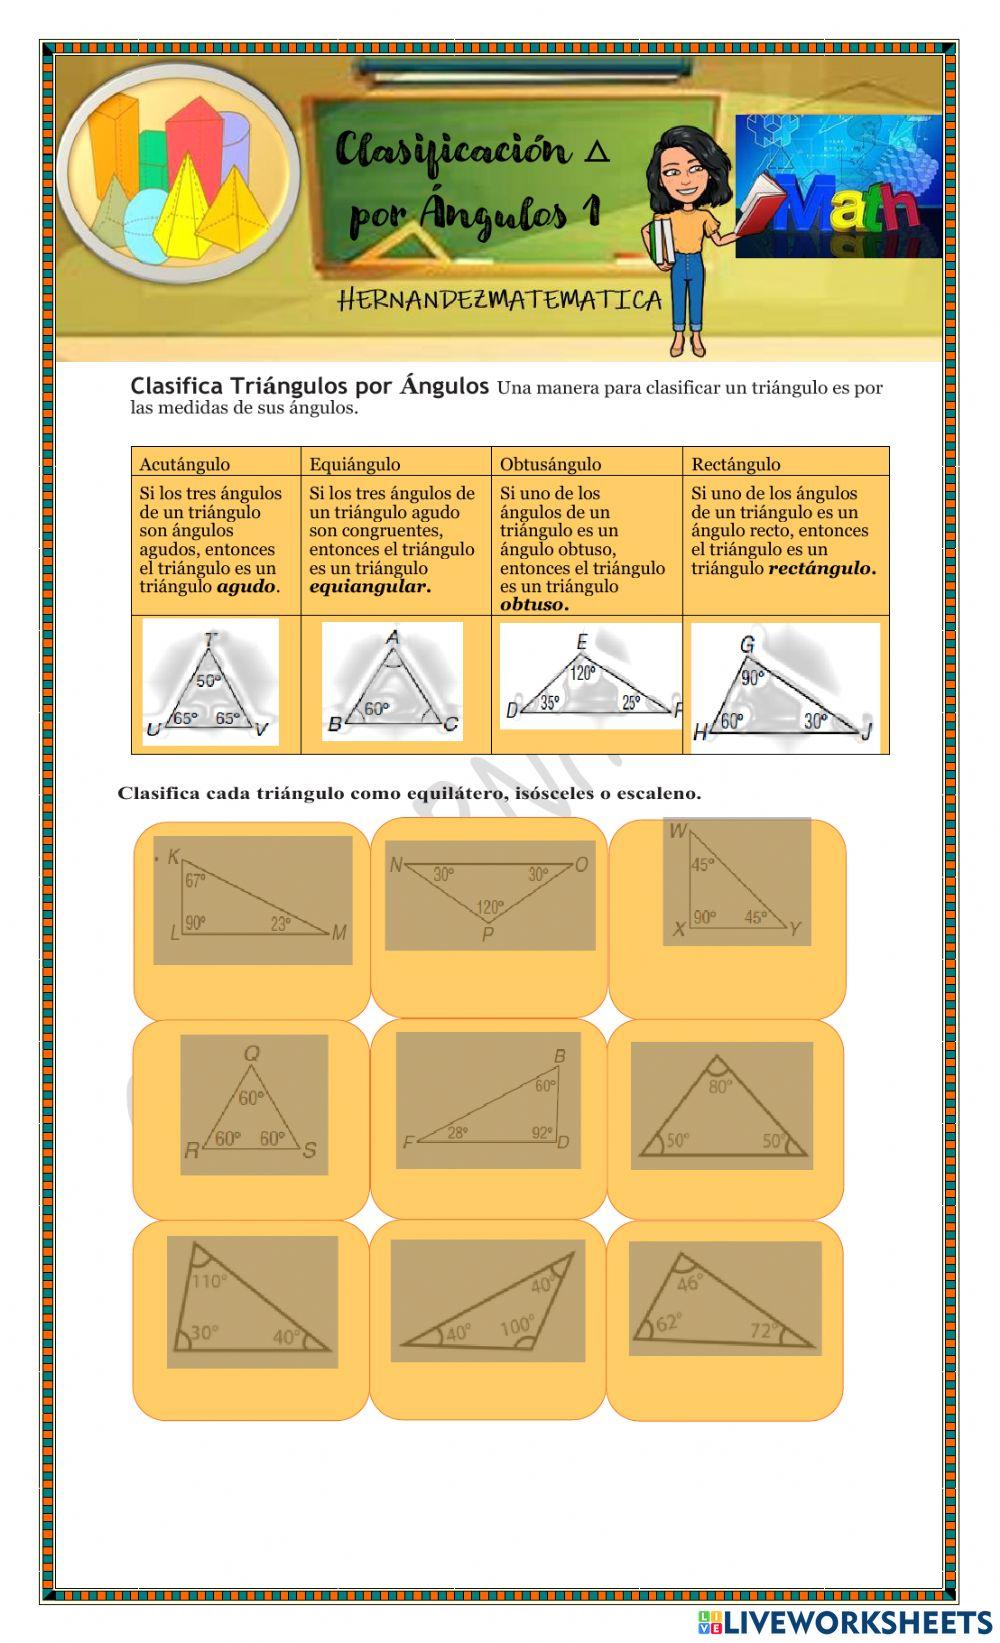 Clasificacion de triangulos por angulos 1